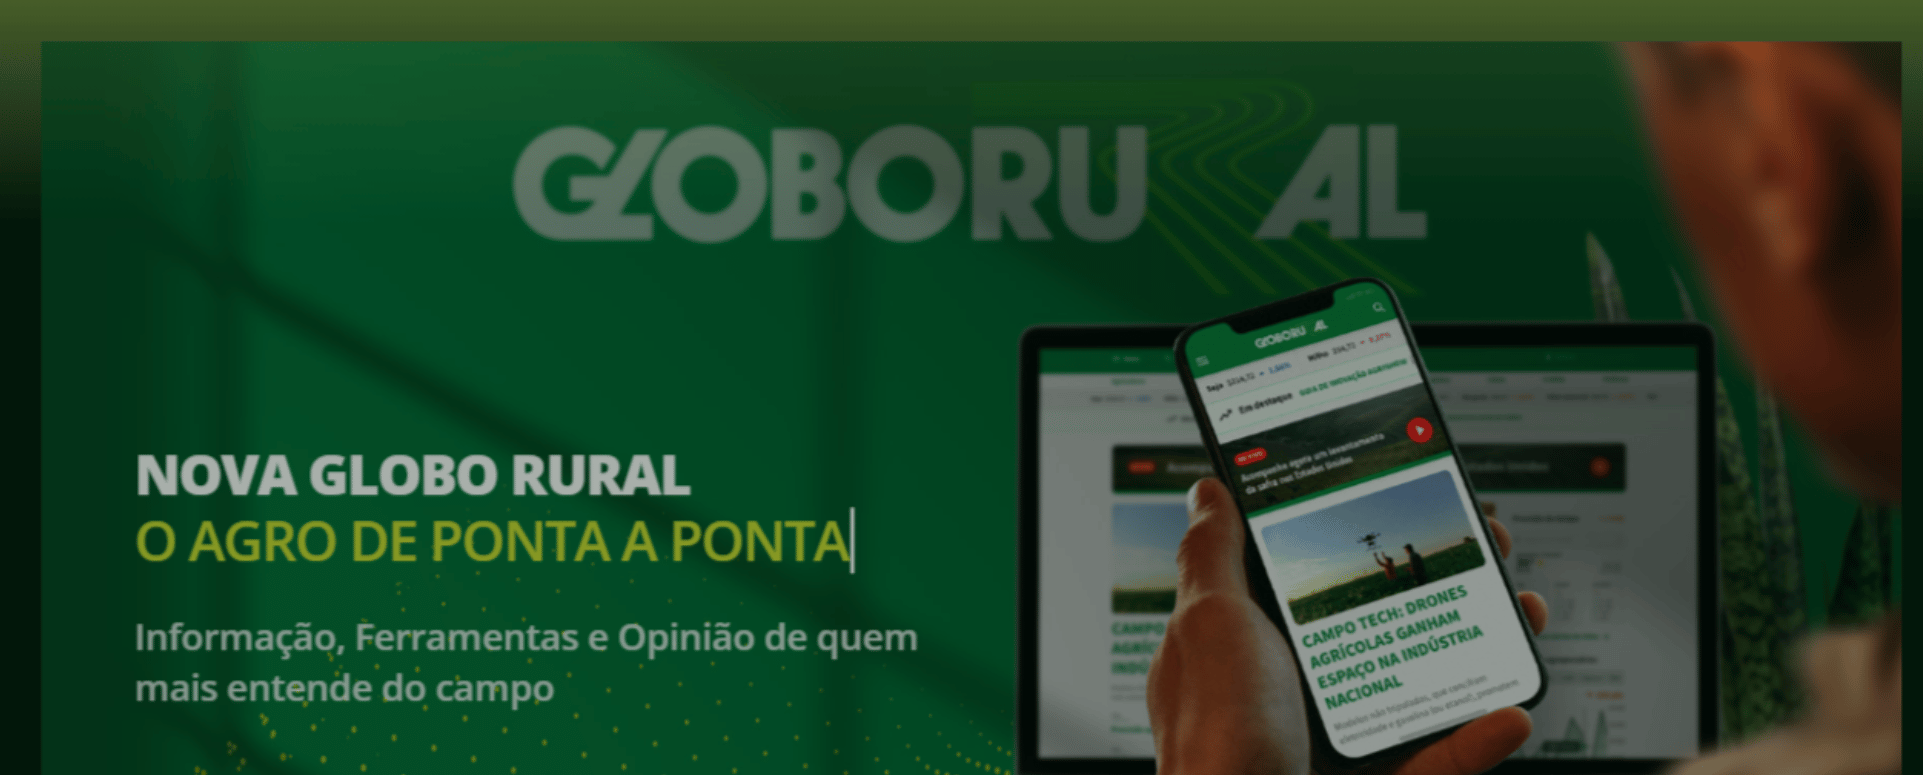 Nova Globo Rural O Agro de Ponta a Ponta